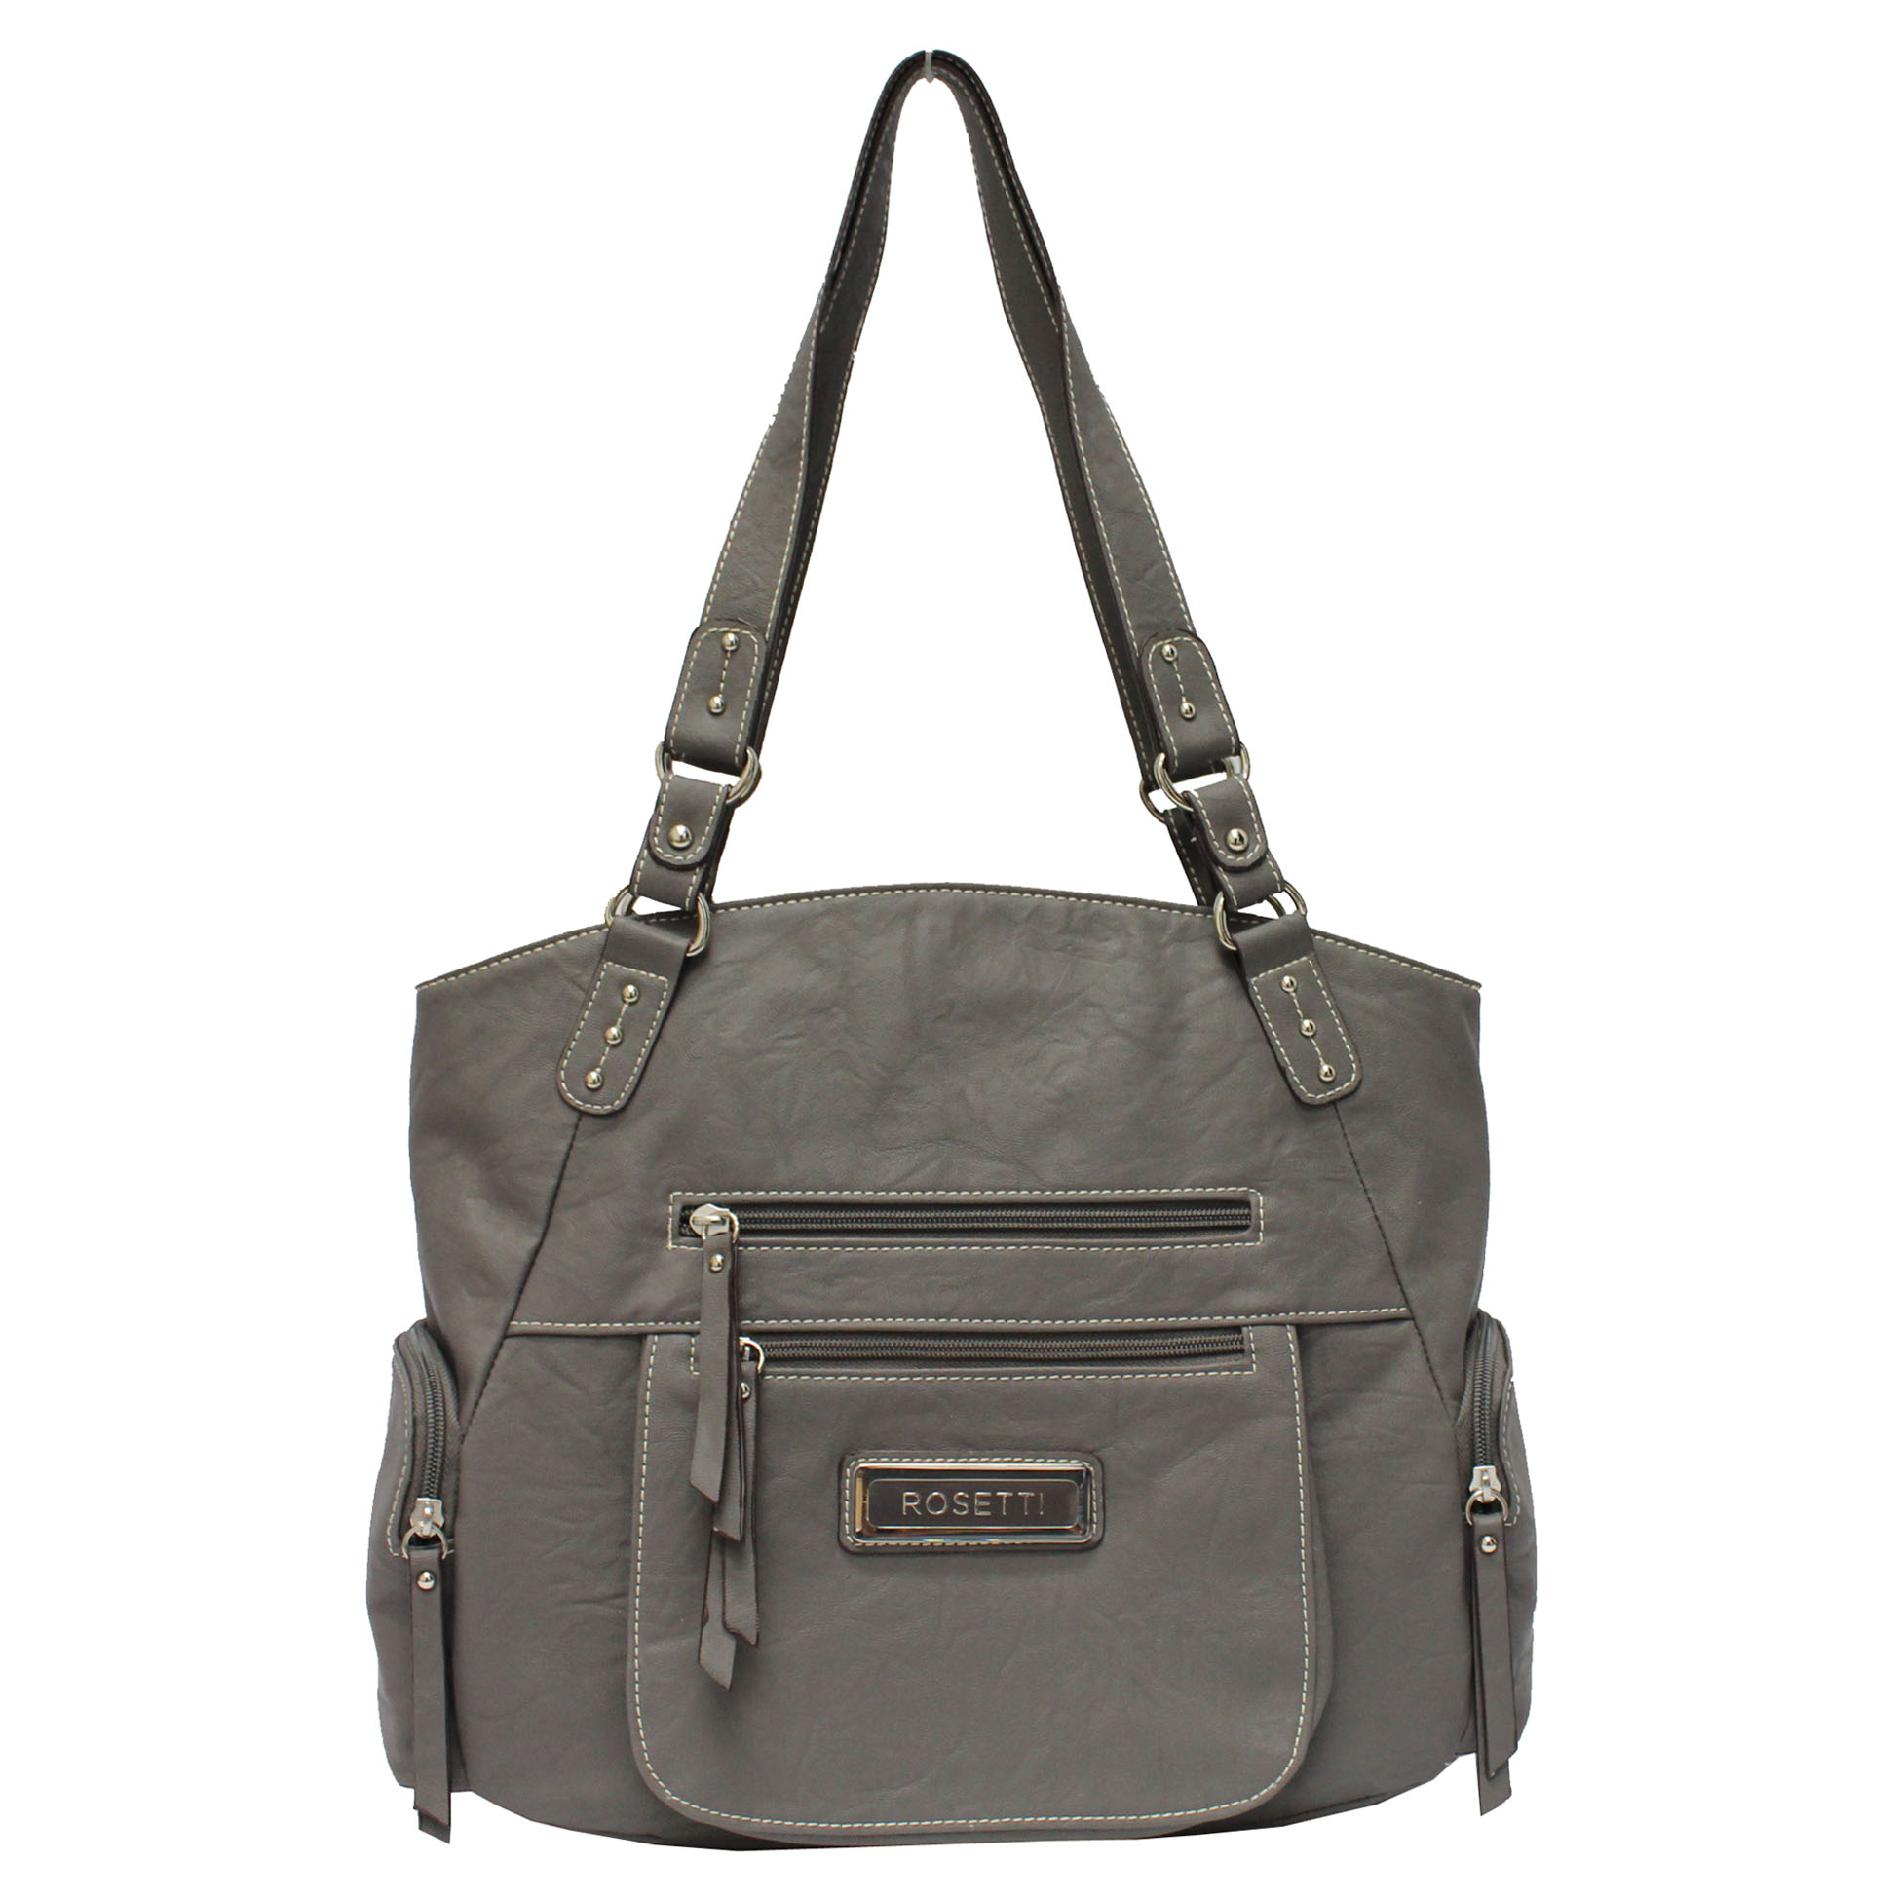 Rosetti Women's Flips for Zips Shopper Handbag